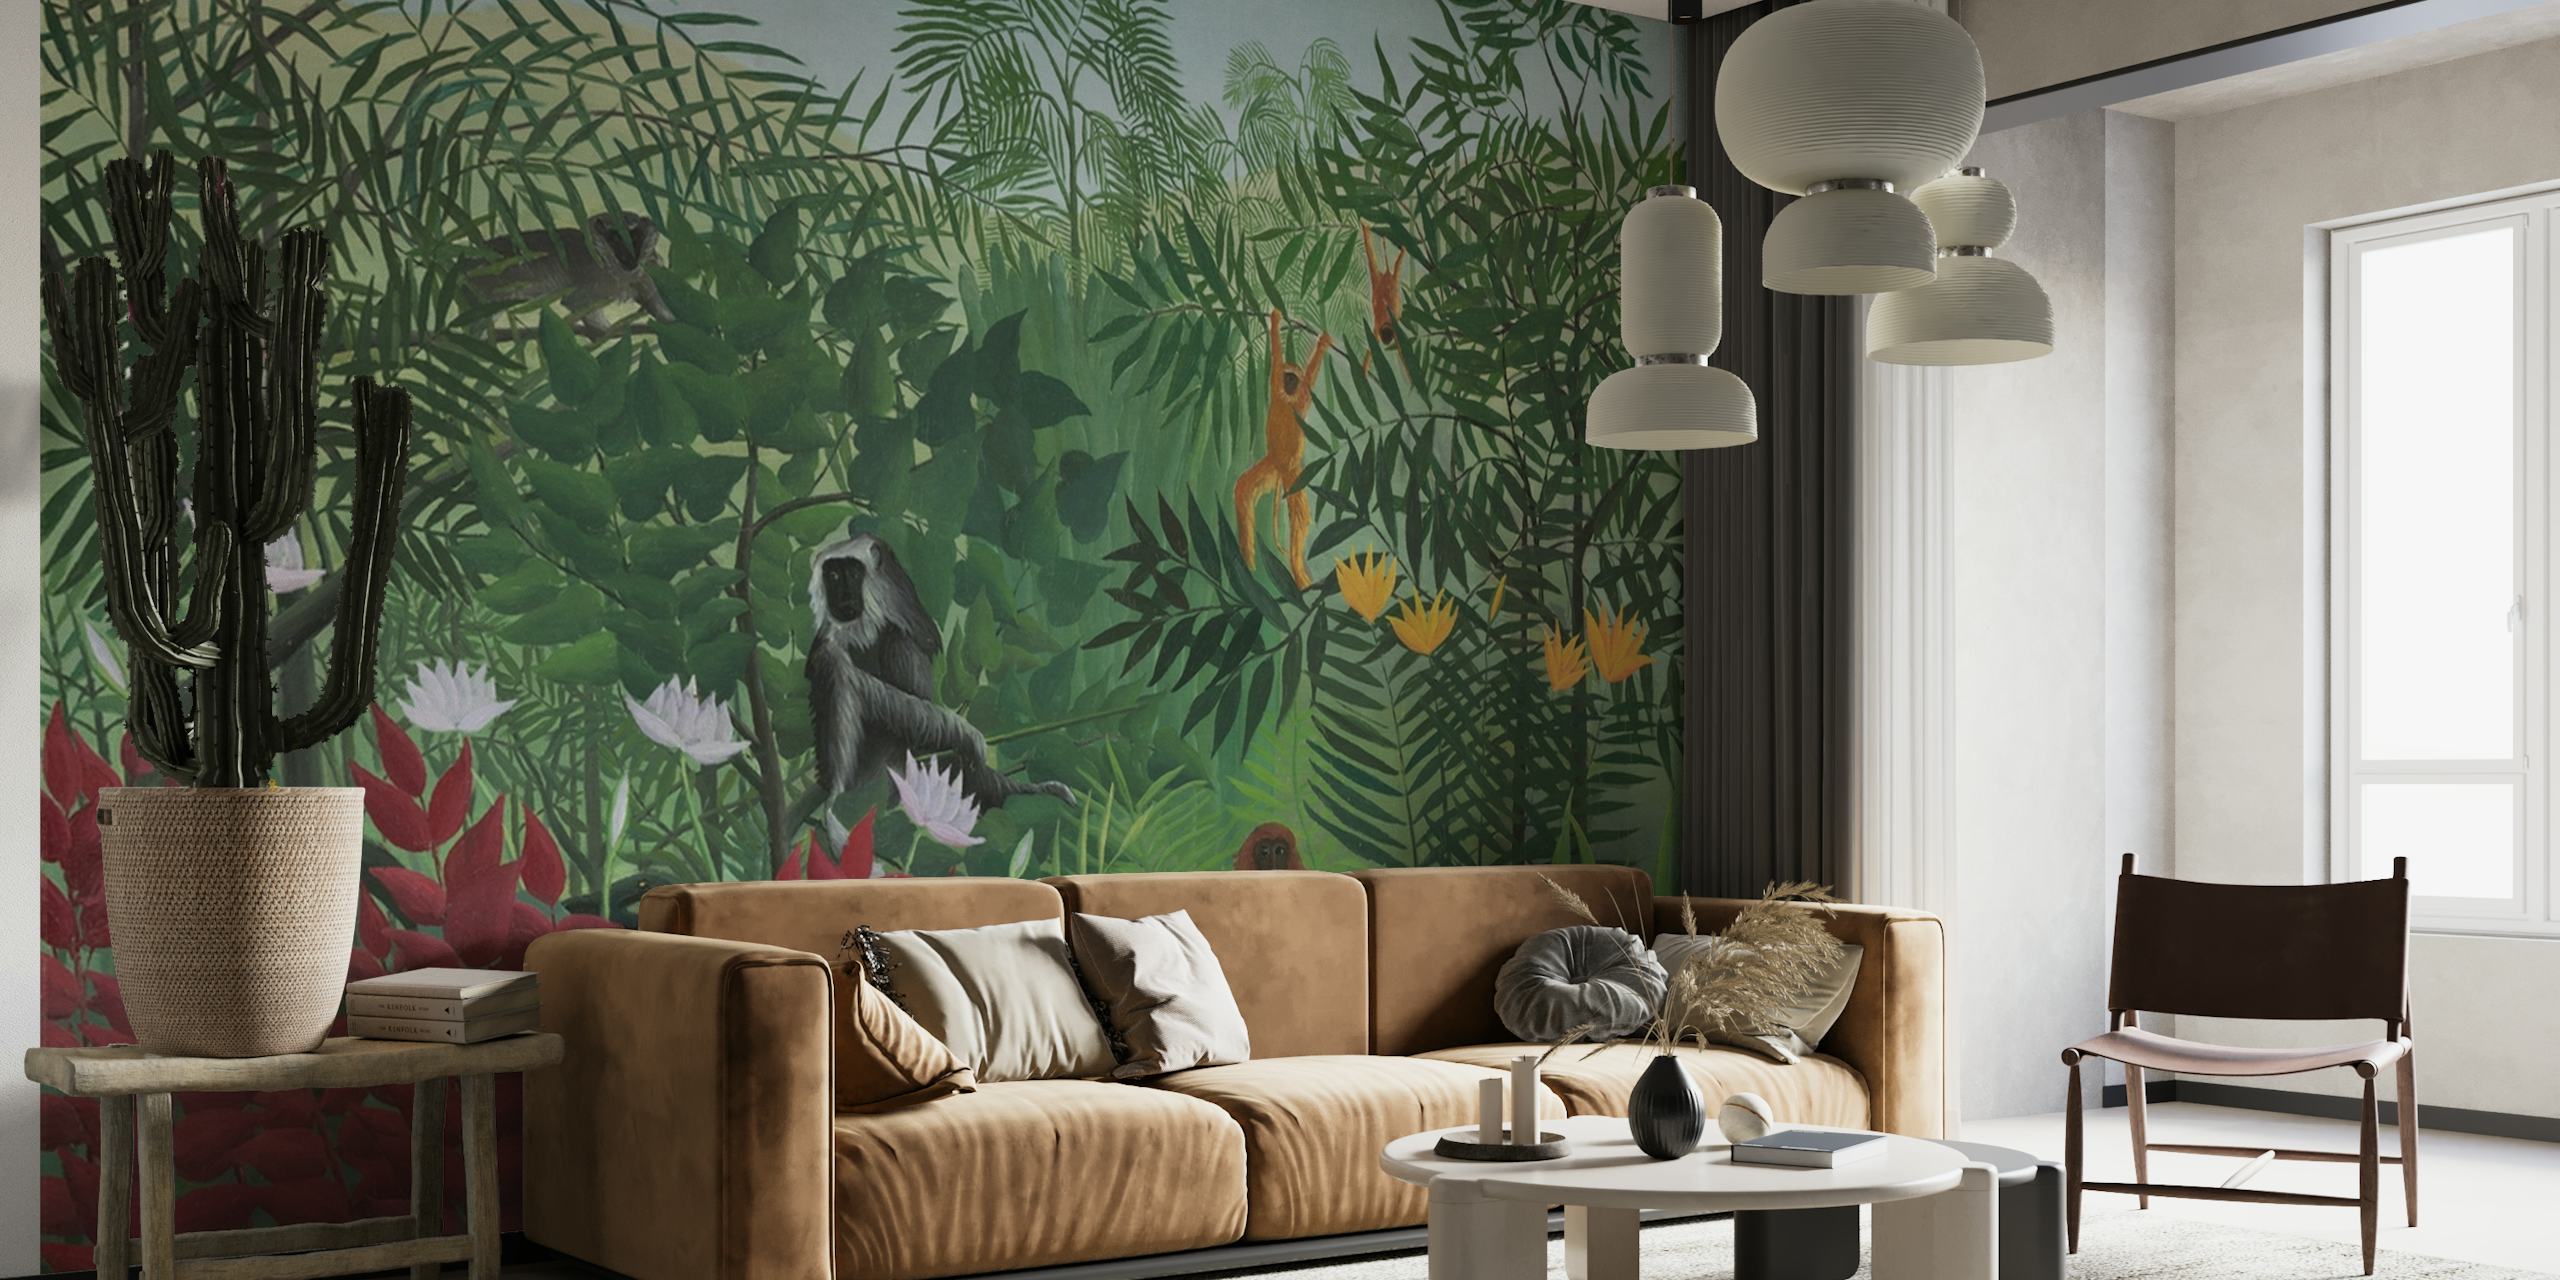 Vægmaleri, der viser en tropisk skovscene med aber, inspireret af Henri Rousseaus kunststil.